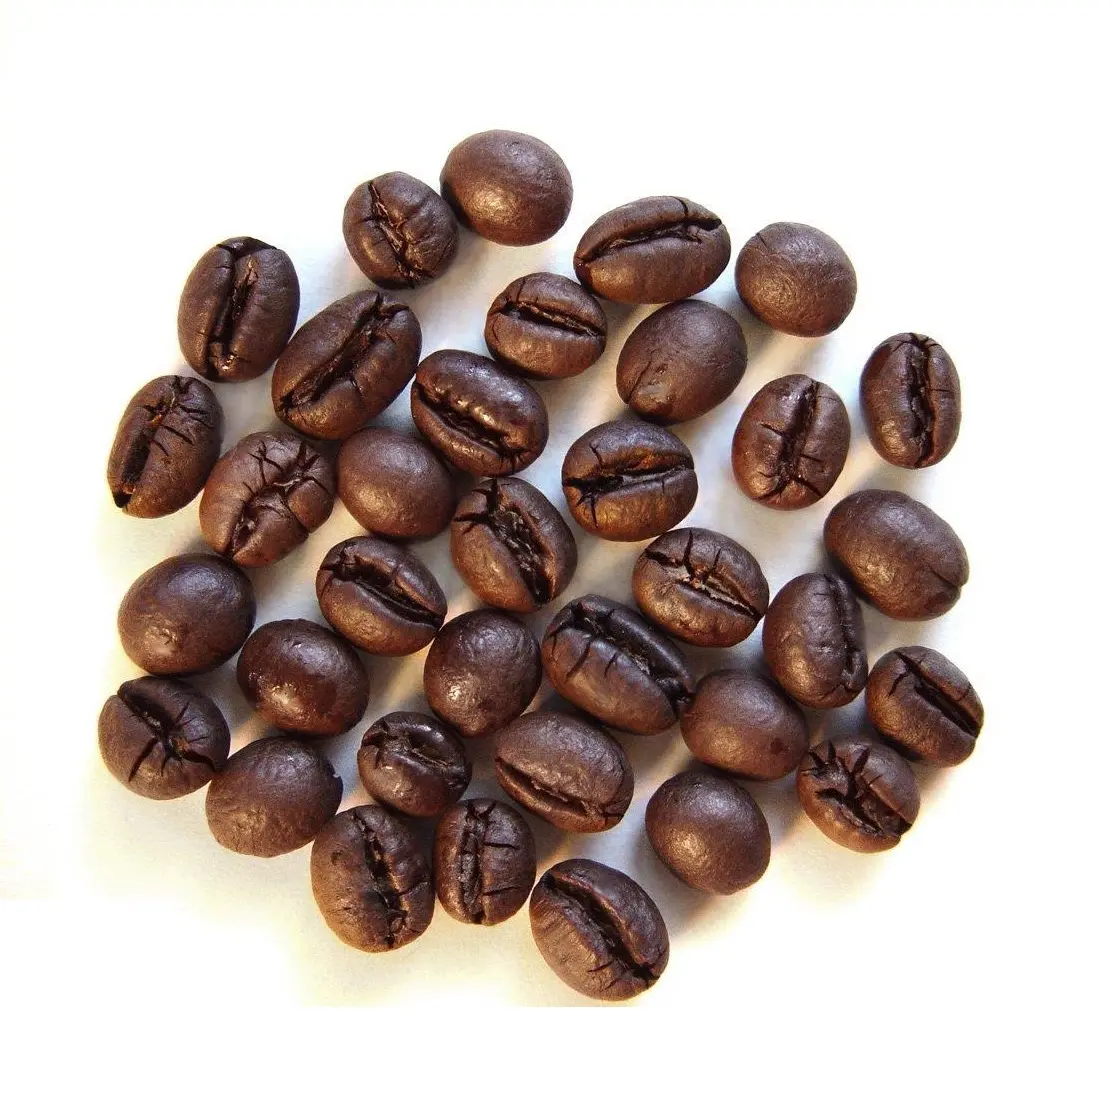 Vietnamita migliore qualità prezzo competitivo 100% Robusta caffè macinato tostato caffè in grani Premium - WHATSAP 0084989322607